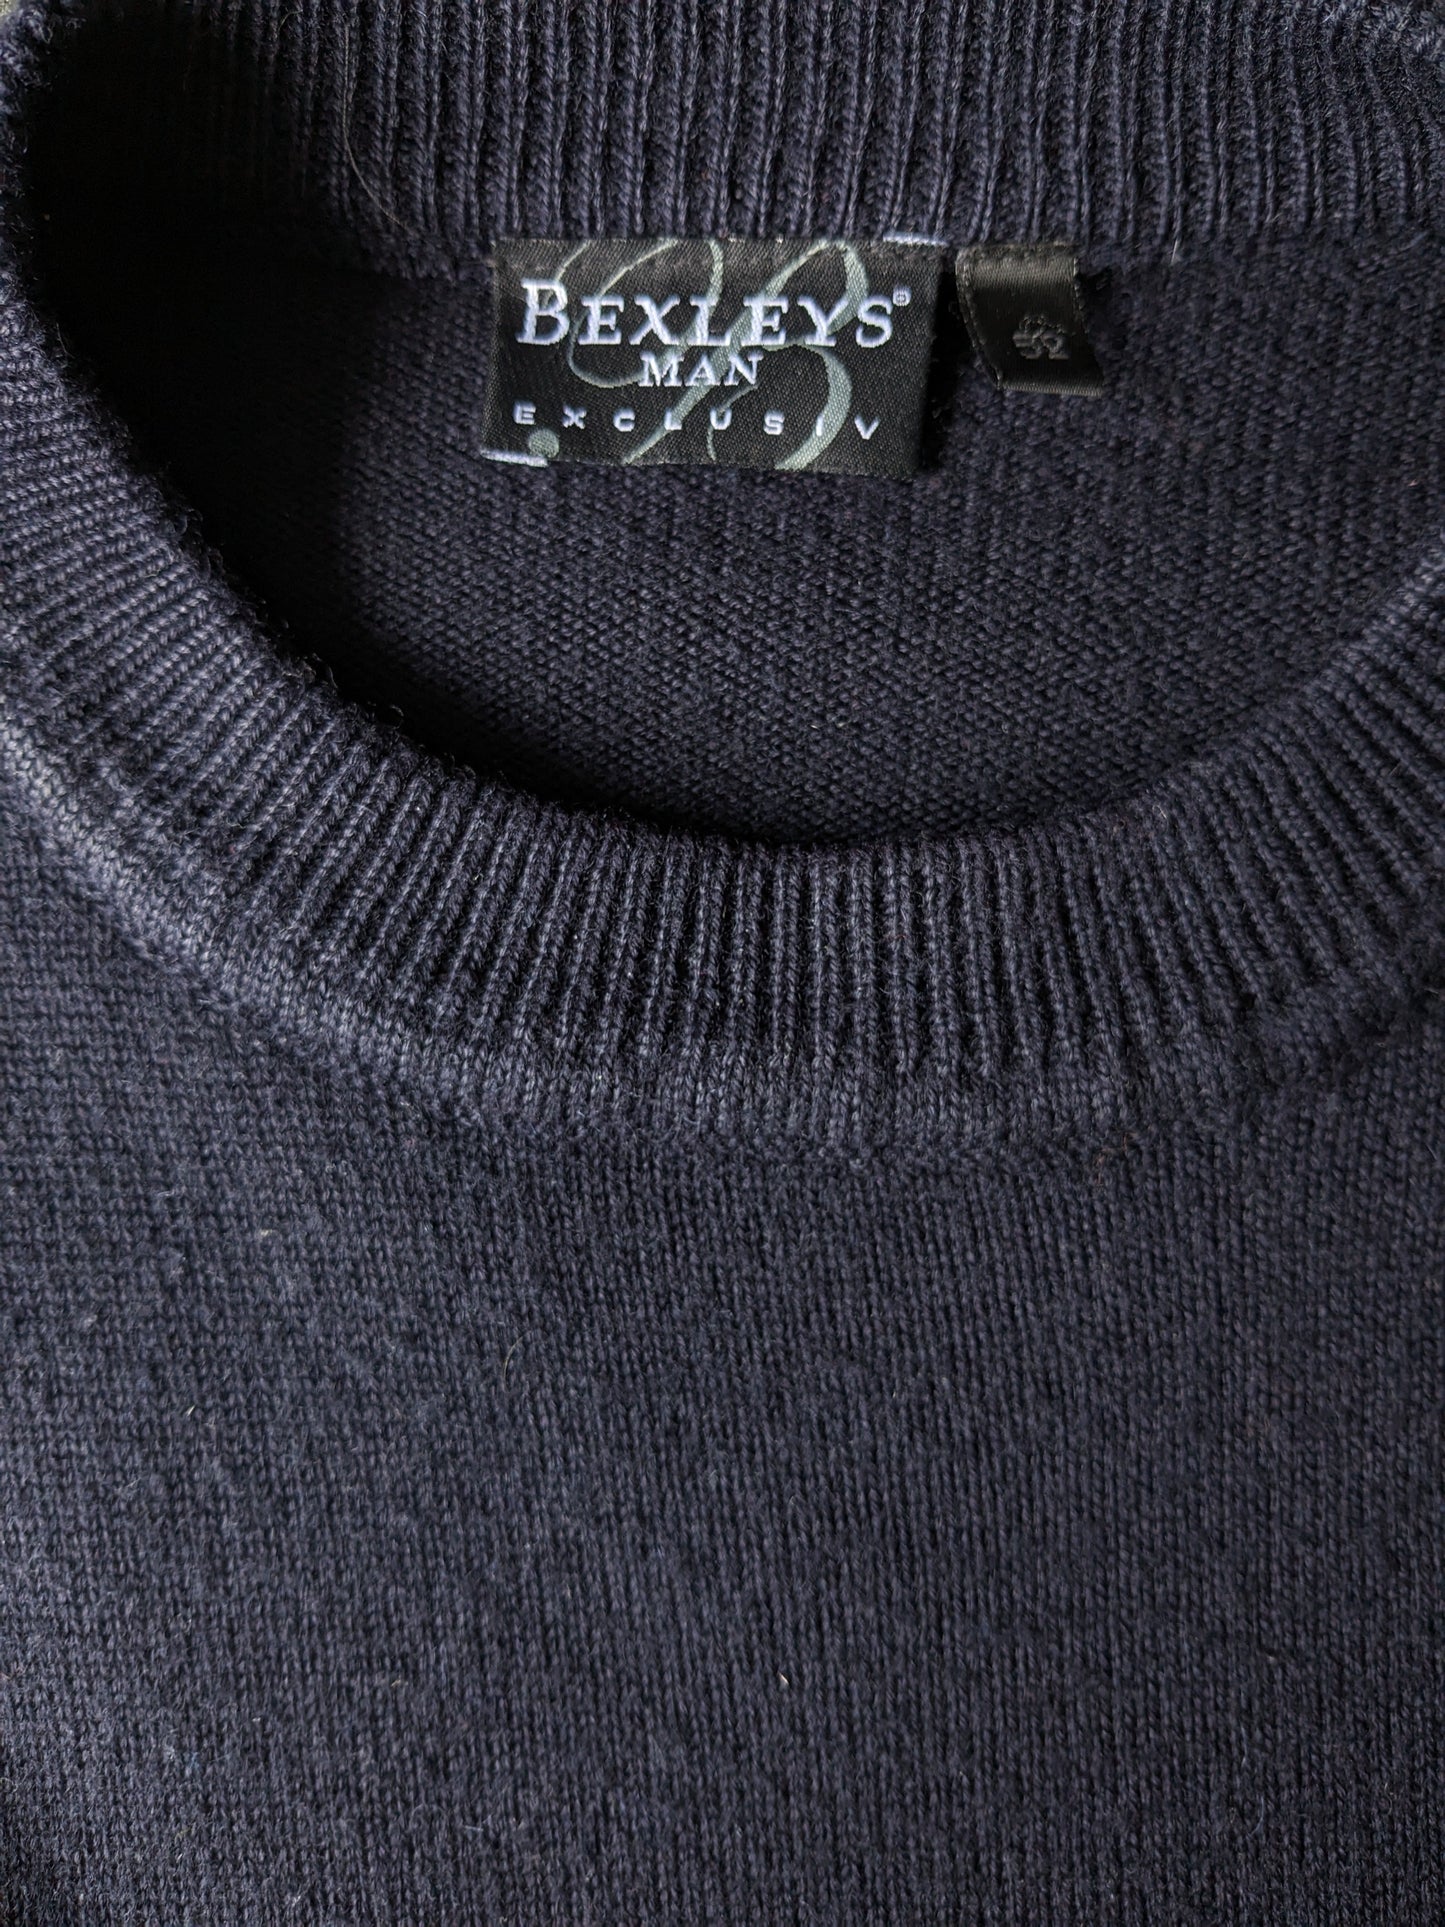 Sighificatore vintage di lana merino bexleys. Colorato rosso grigio blu scuro. Taglia L.